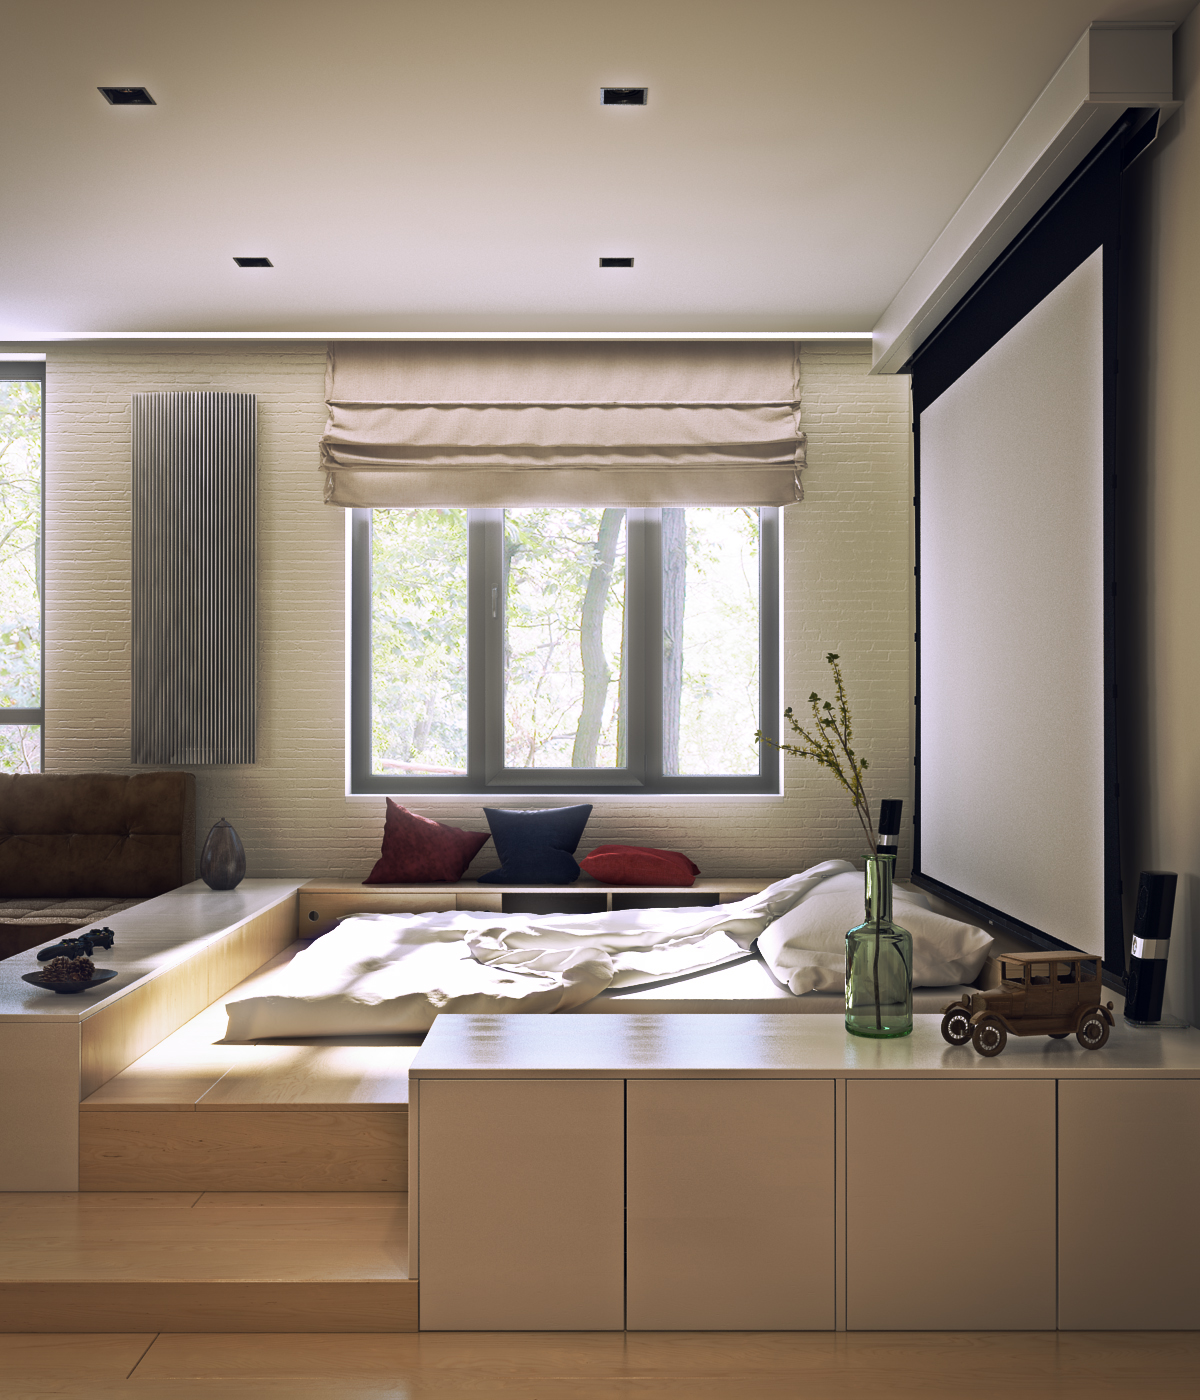 Дизайн интерьер квартира студия минимализм стиль Interior  Design flat studio Minimalism